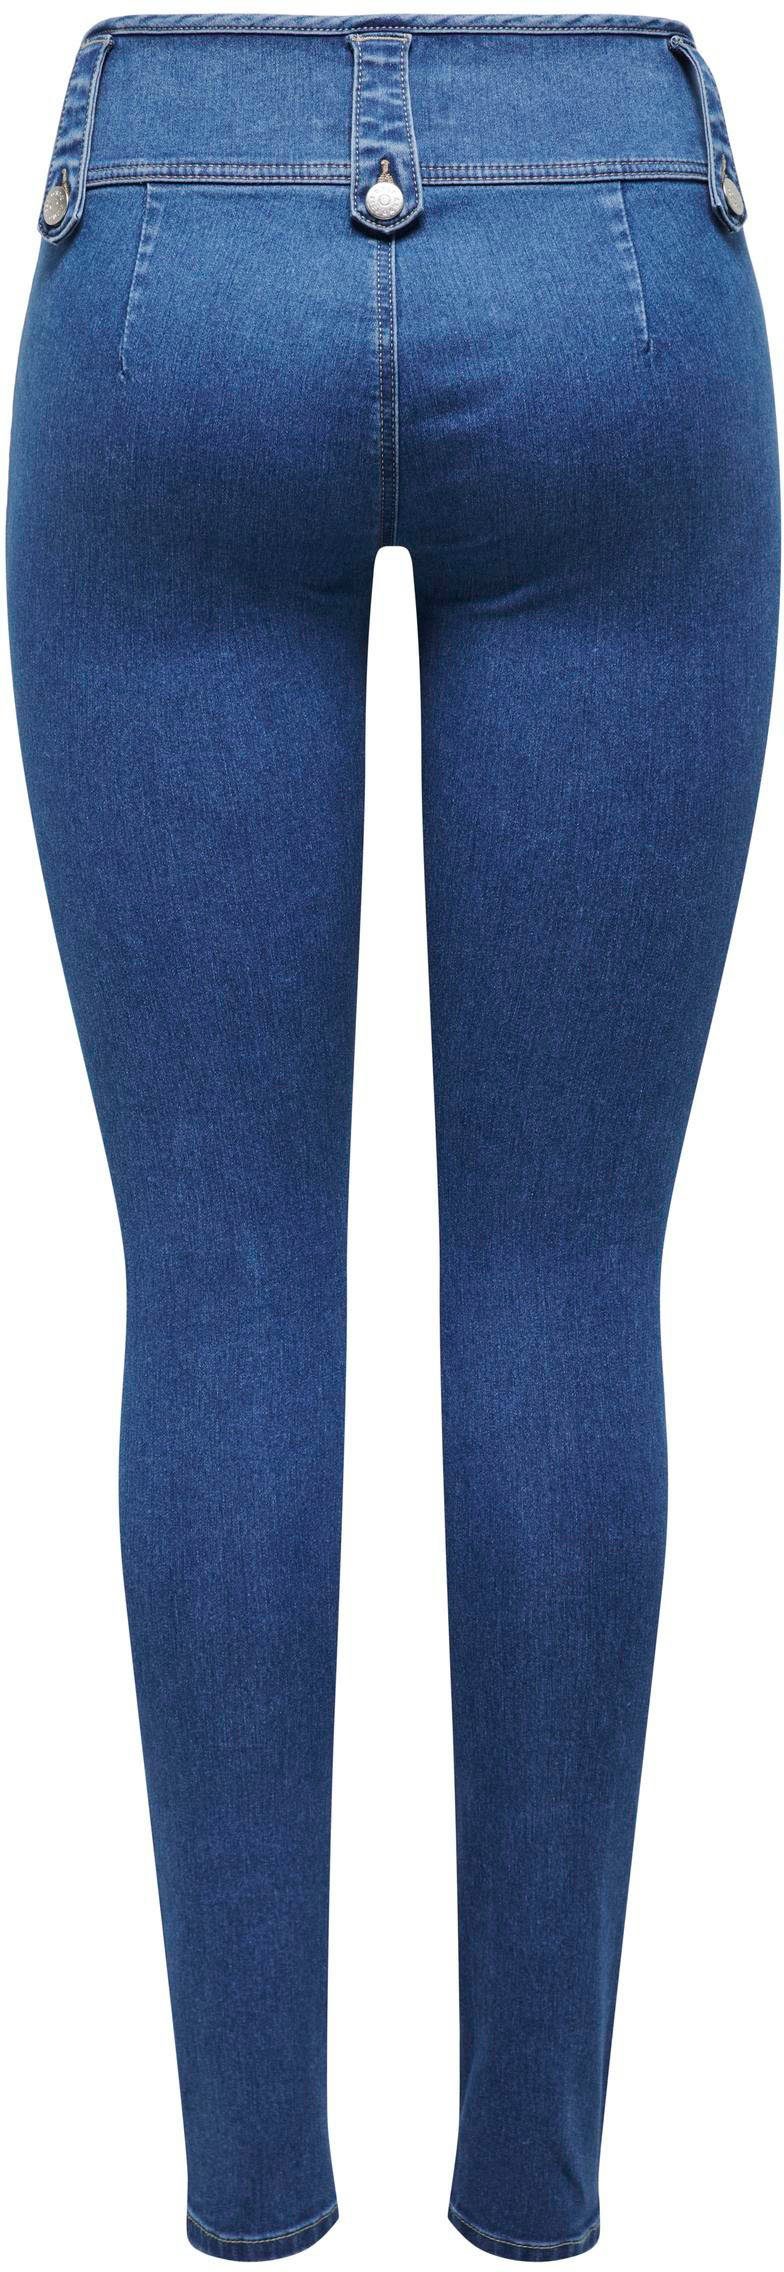 SK ONLY VIS DET Skinny-fit-Jeans Medium BUT ONLROYAL DNM PIM Denim Blue REG